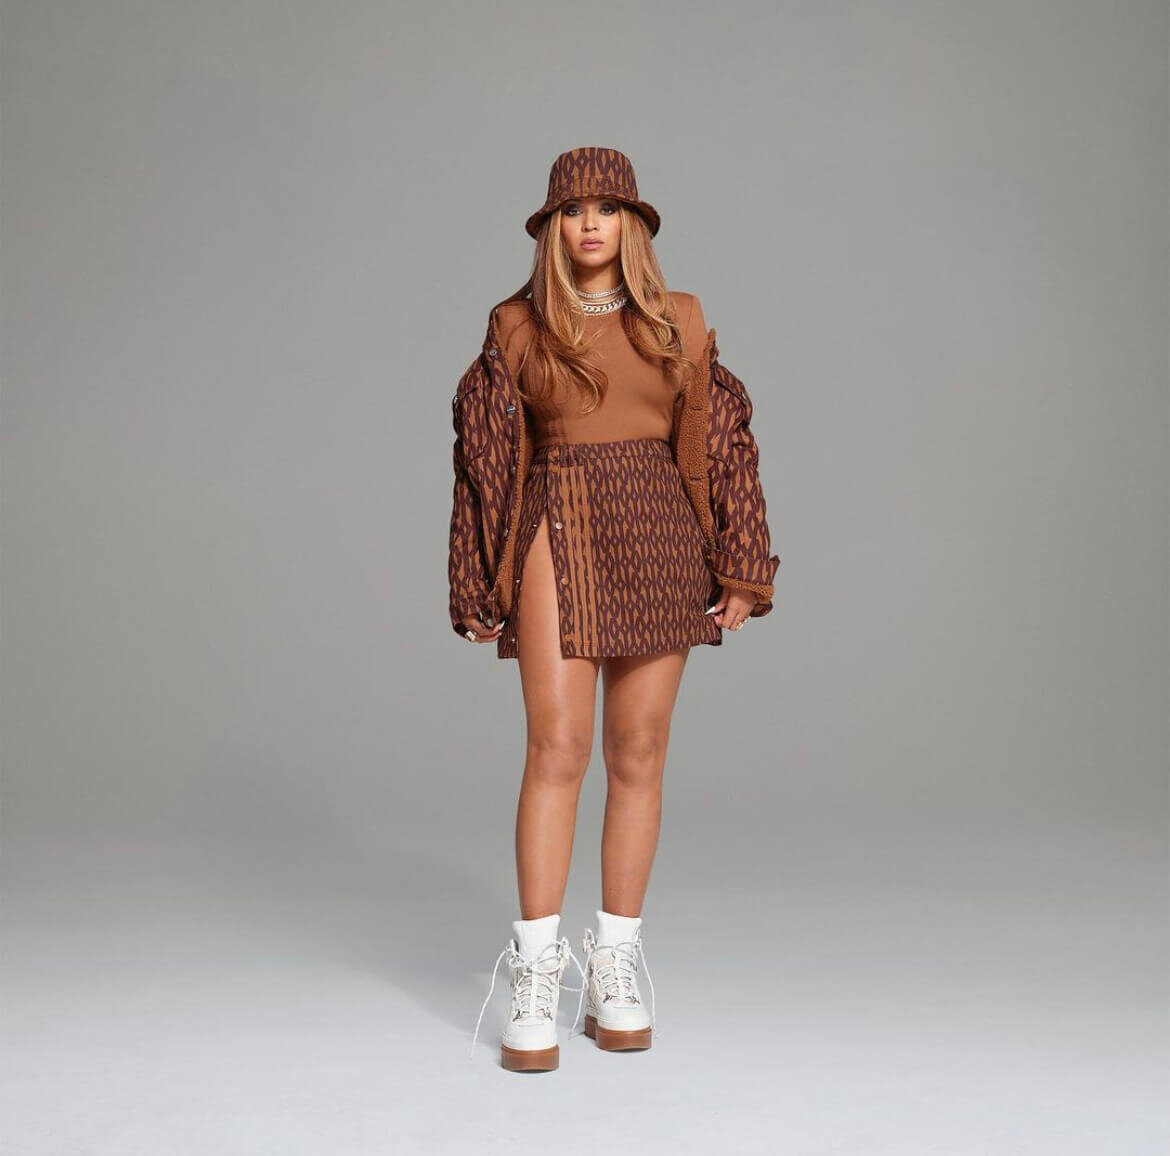 CNK-Ivy-Park-Icy-Park-brown-printed-skirt-jacket-bucket-hat.jpg